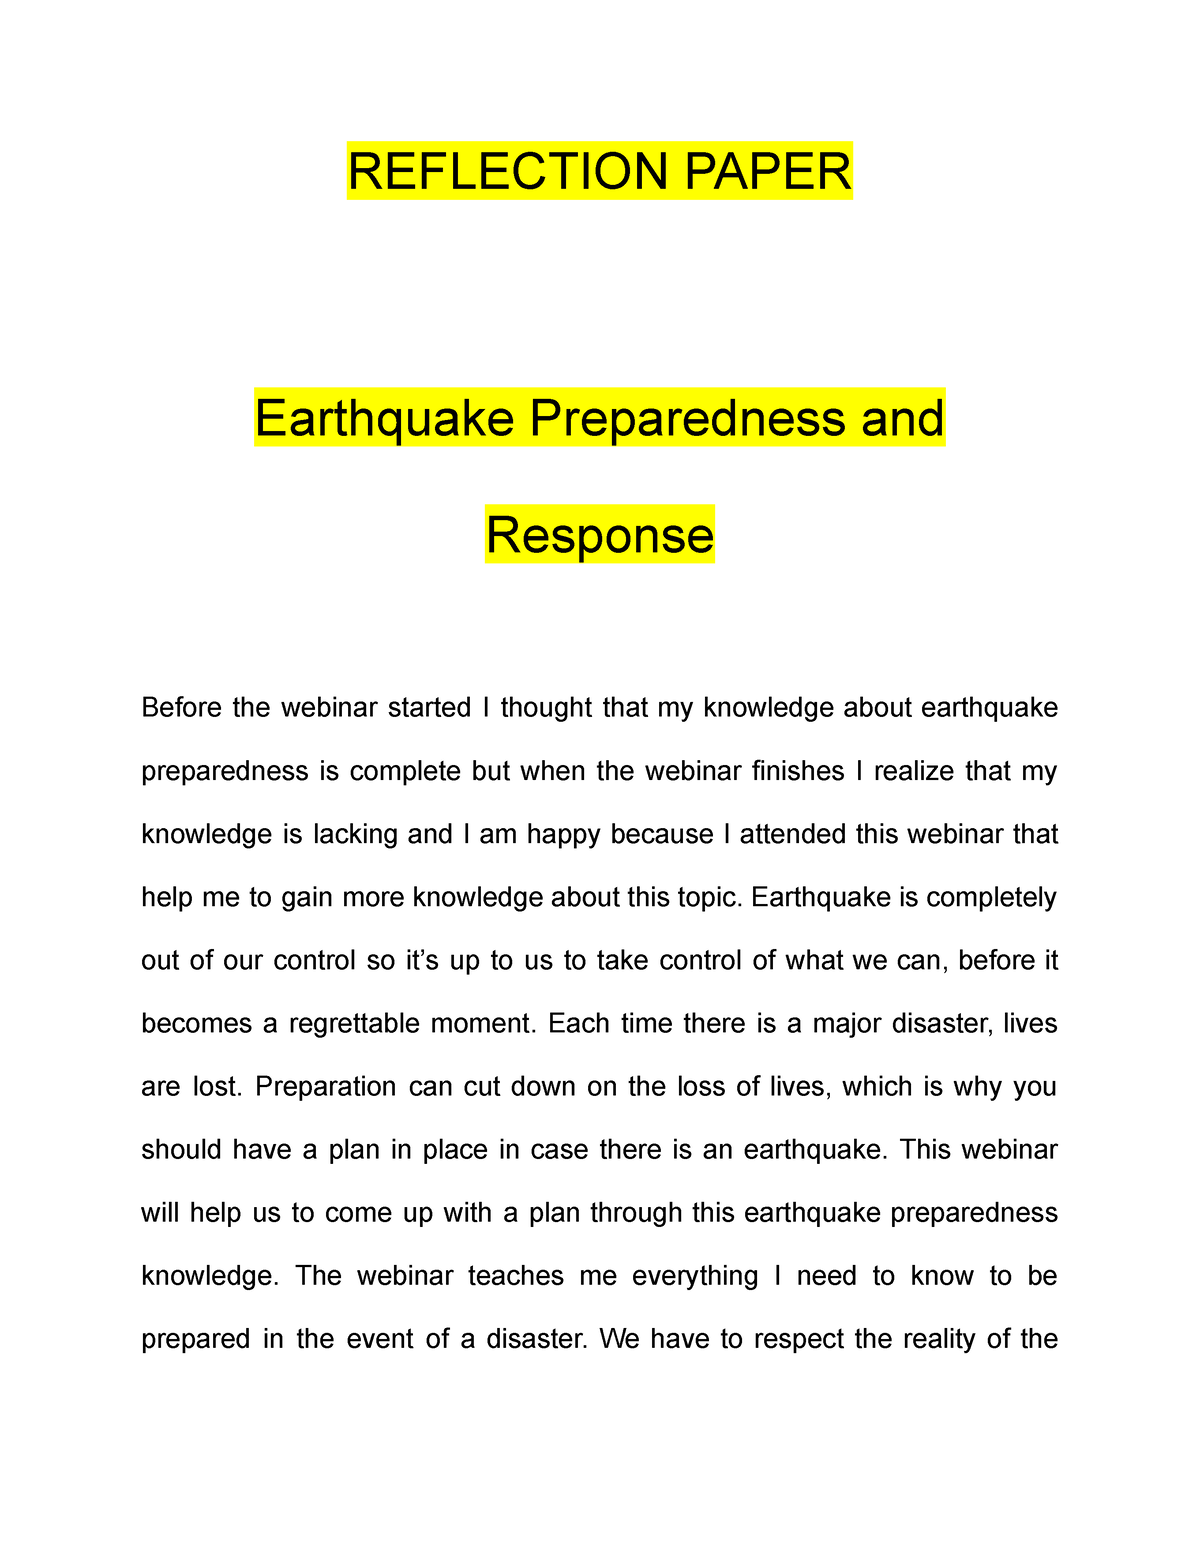 earthquake preparedness research paper